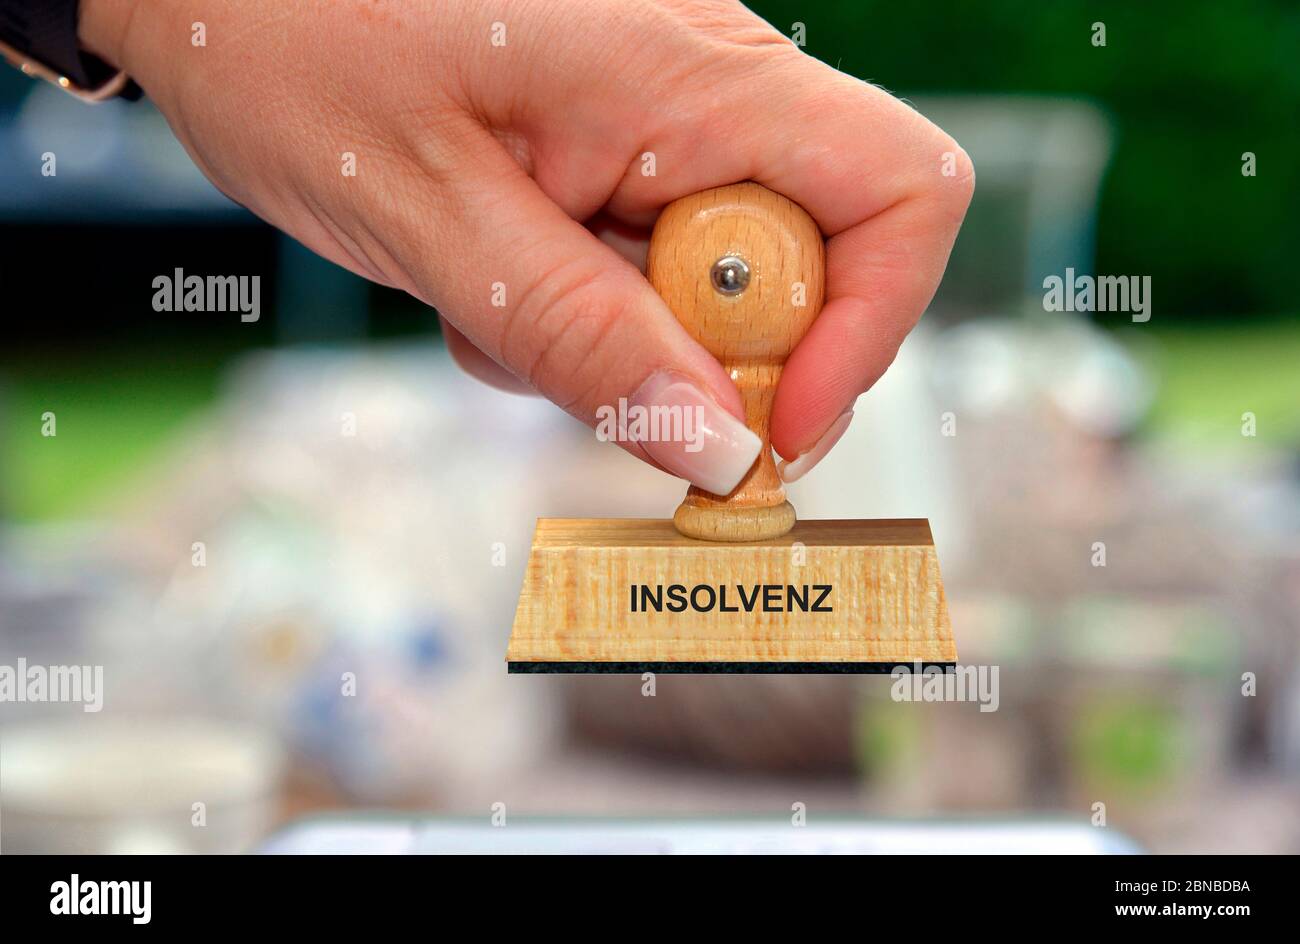 Timbro in mano di una donna scritta Indolvenz, insolvenza, Germania Foto Stock